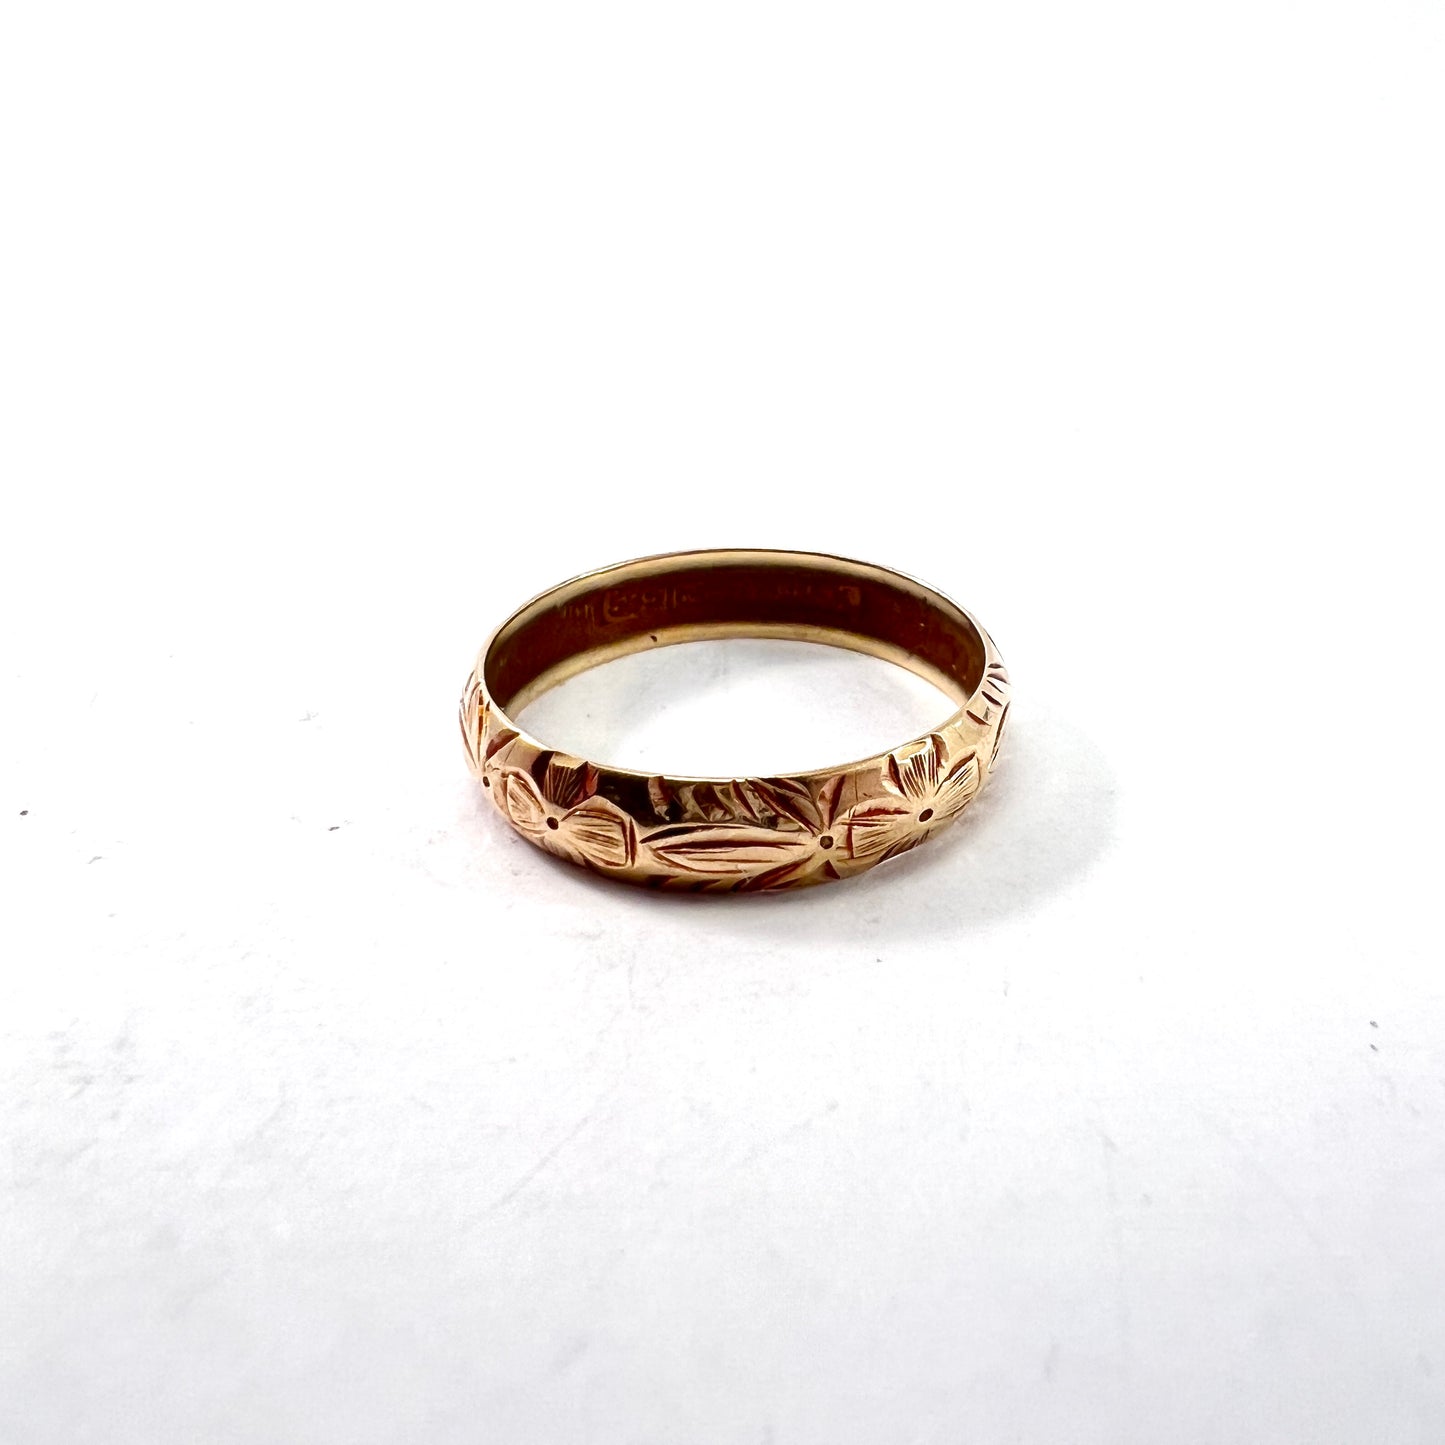 Michael Mindort, Denmark 1943. Vintage (War-Time) 14k Gold Wedding Band Ring.